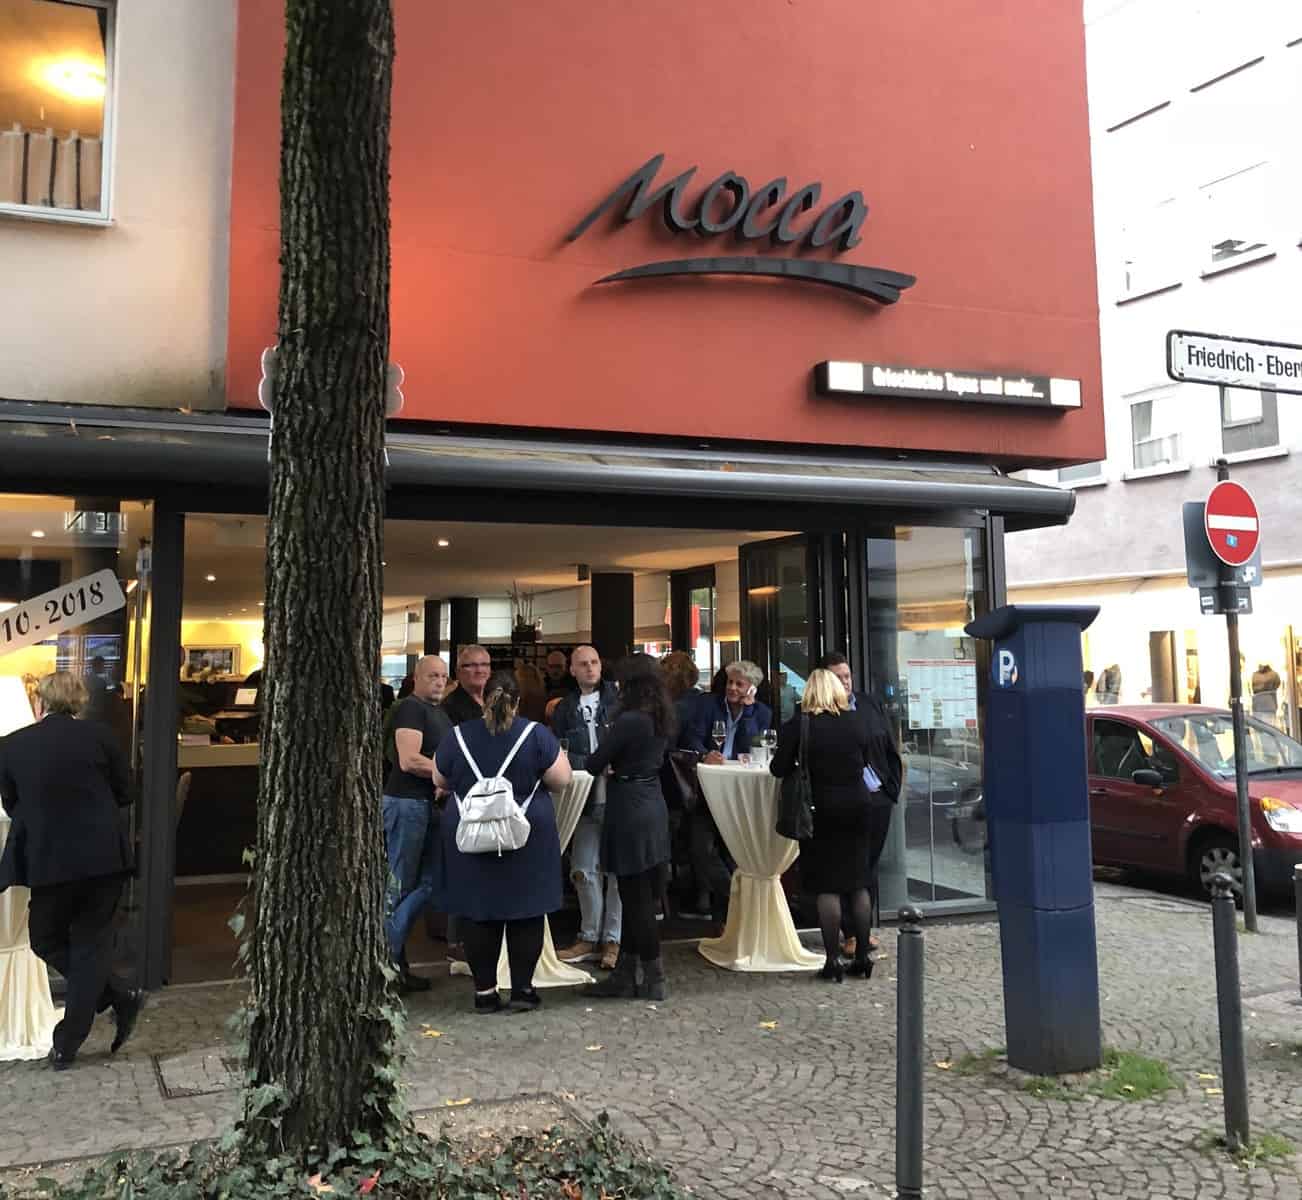 Neueröffnung des Caffèe Mocca als griechische Ouzeria - Wuppertal total:  Aktuelle Nachrichten und lokale News